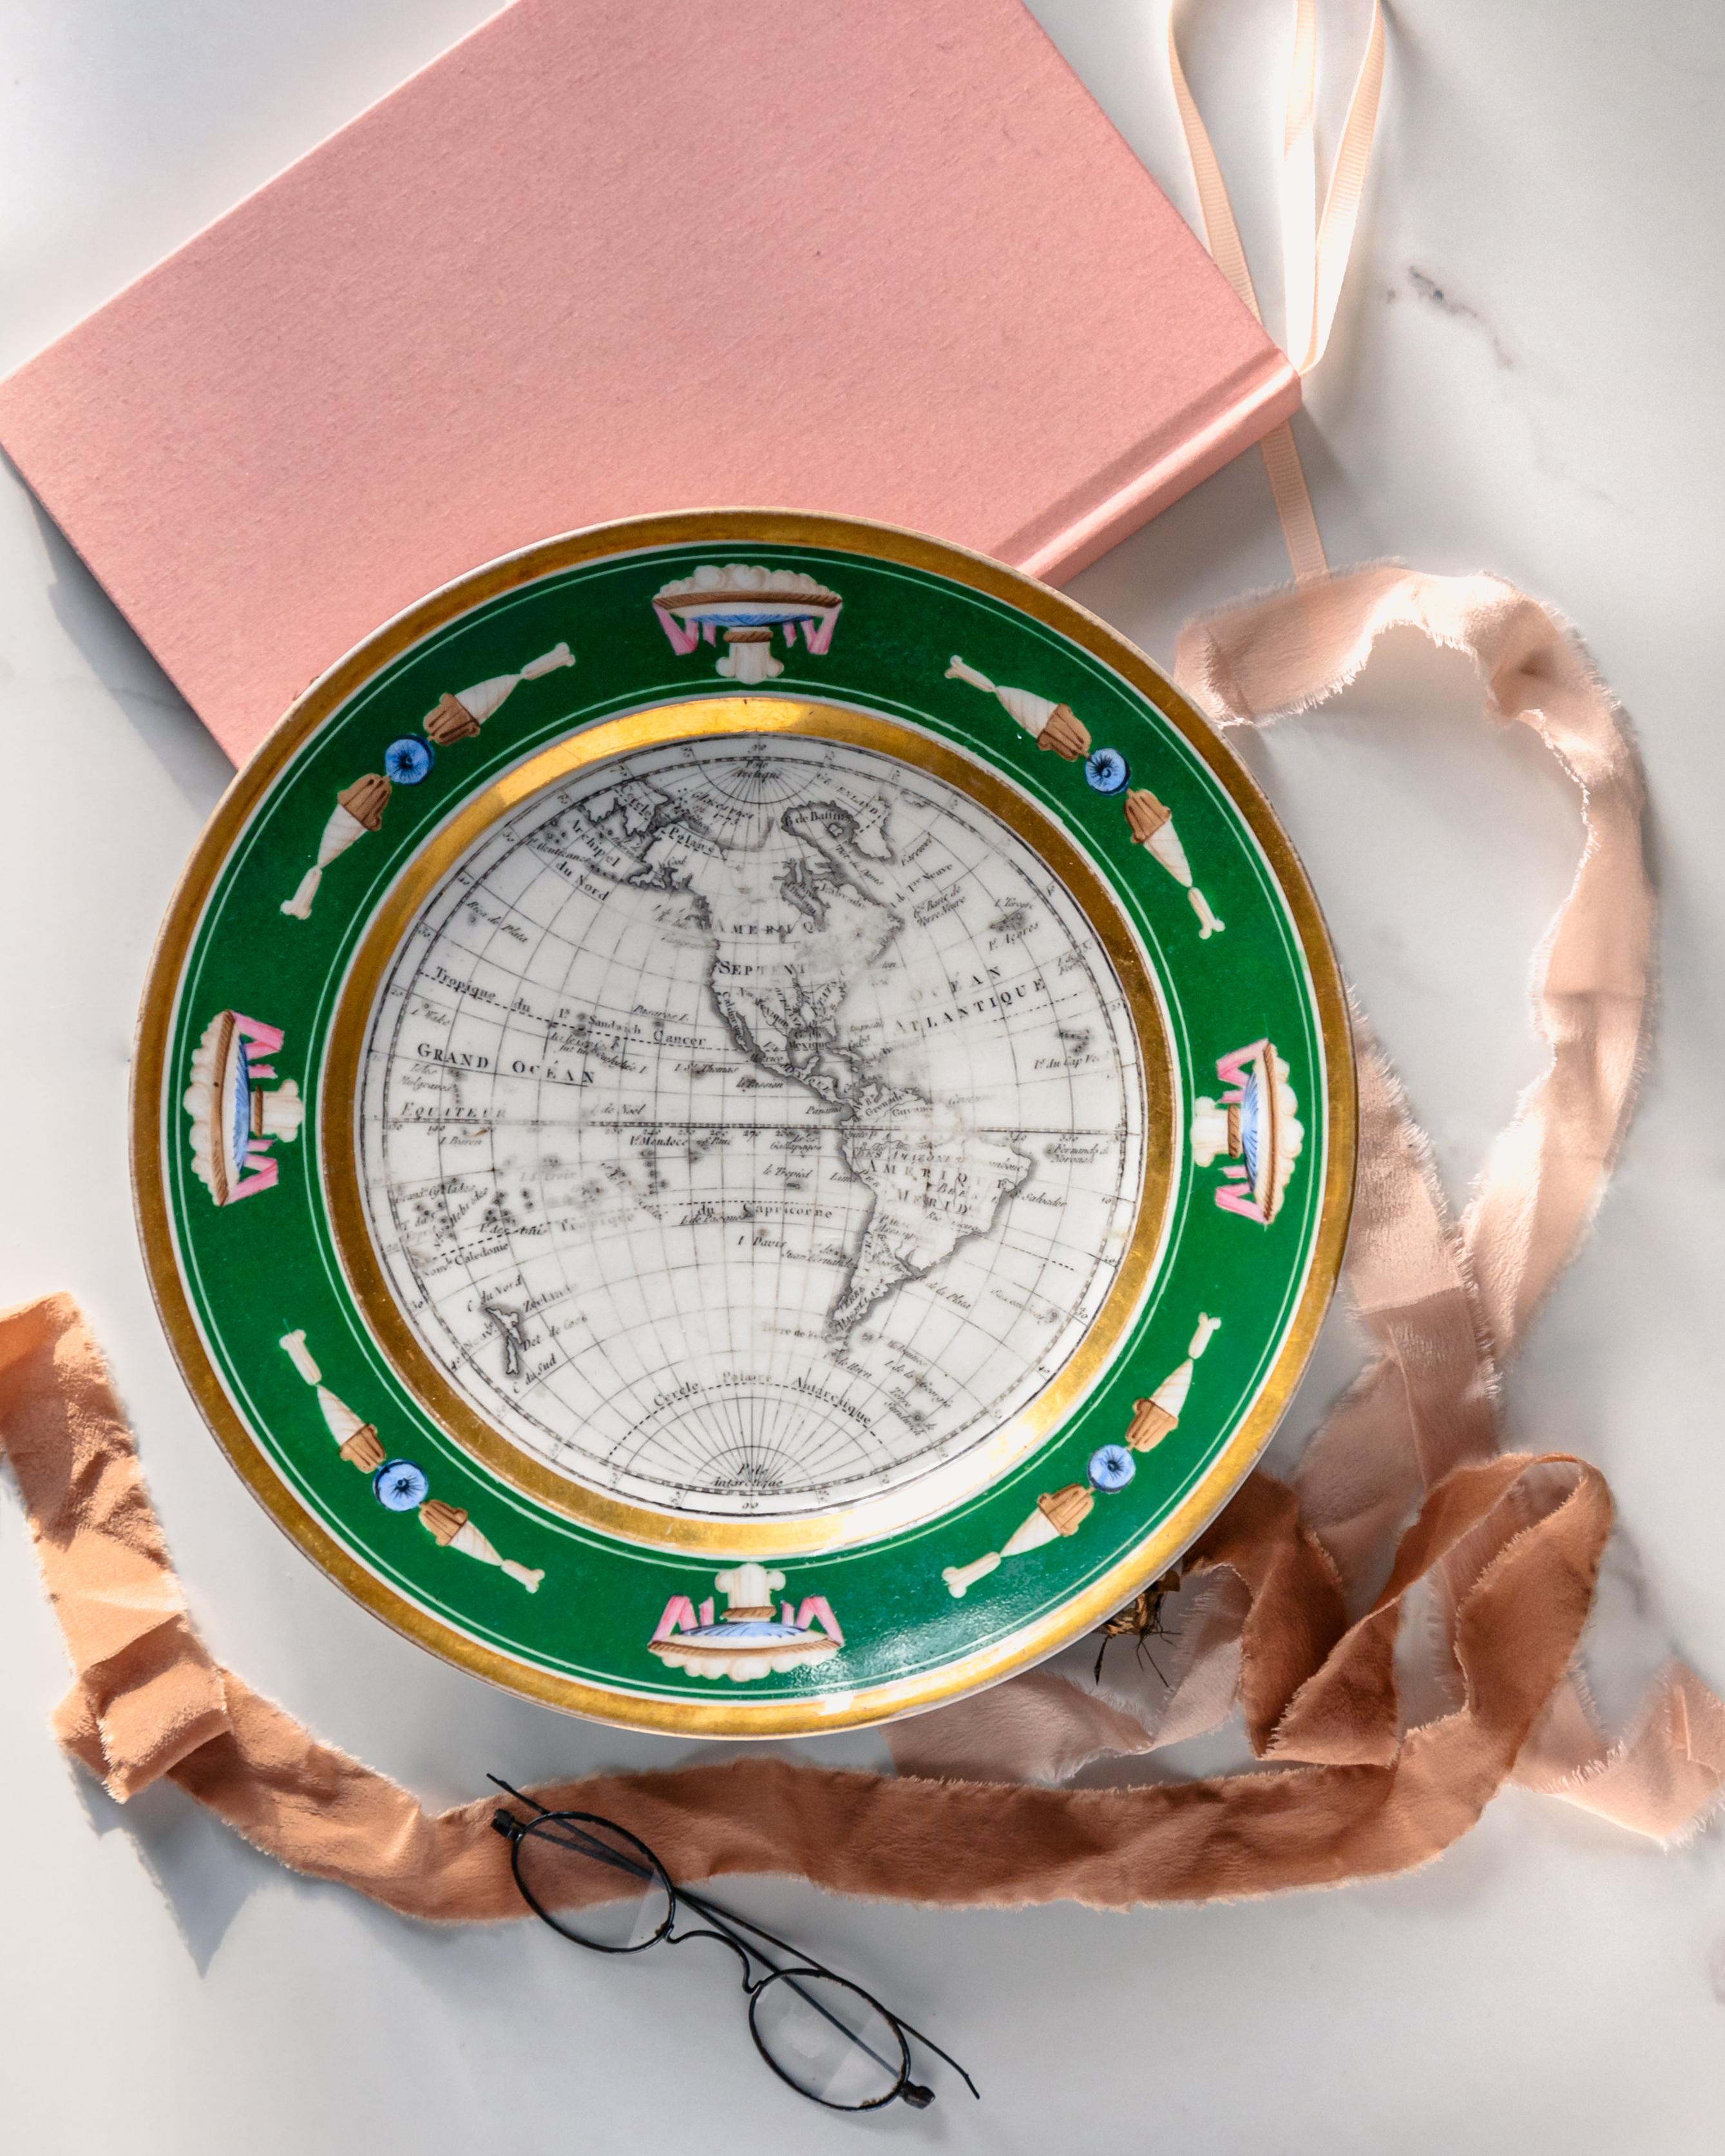 Ein schöner kartografischer Kabinettteller aus Porzellan im französischen Empire-Stil aus der Zeit um 1825 mit einer Karte von Nordamerika, die mit einer apfelgrünen und vergoldeten Bordüre mit neoklassizistischen Motiven verziert ist.

Dieser